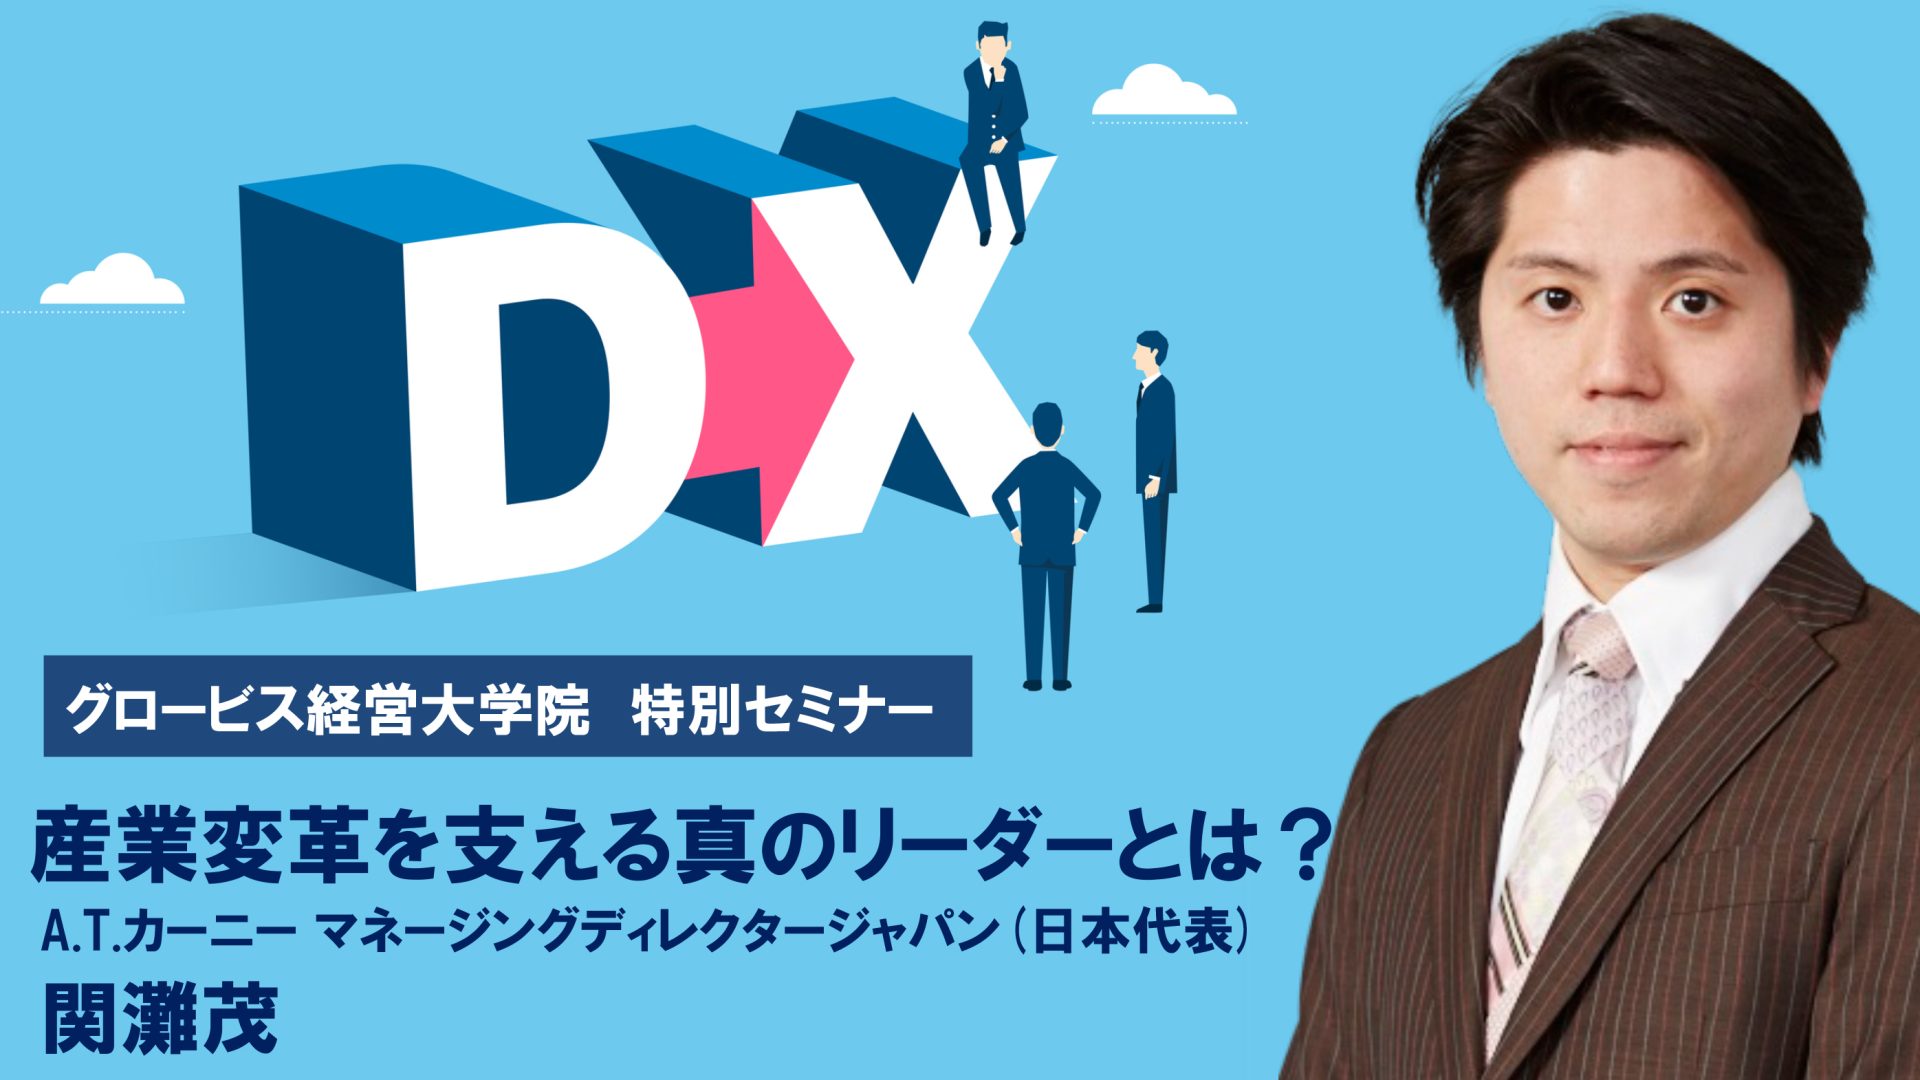 A.T.カーニー日本代表・関灘茂が語る「DX実現の鍵」「産業変革を支える真のリーダー」とは？